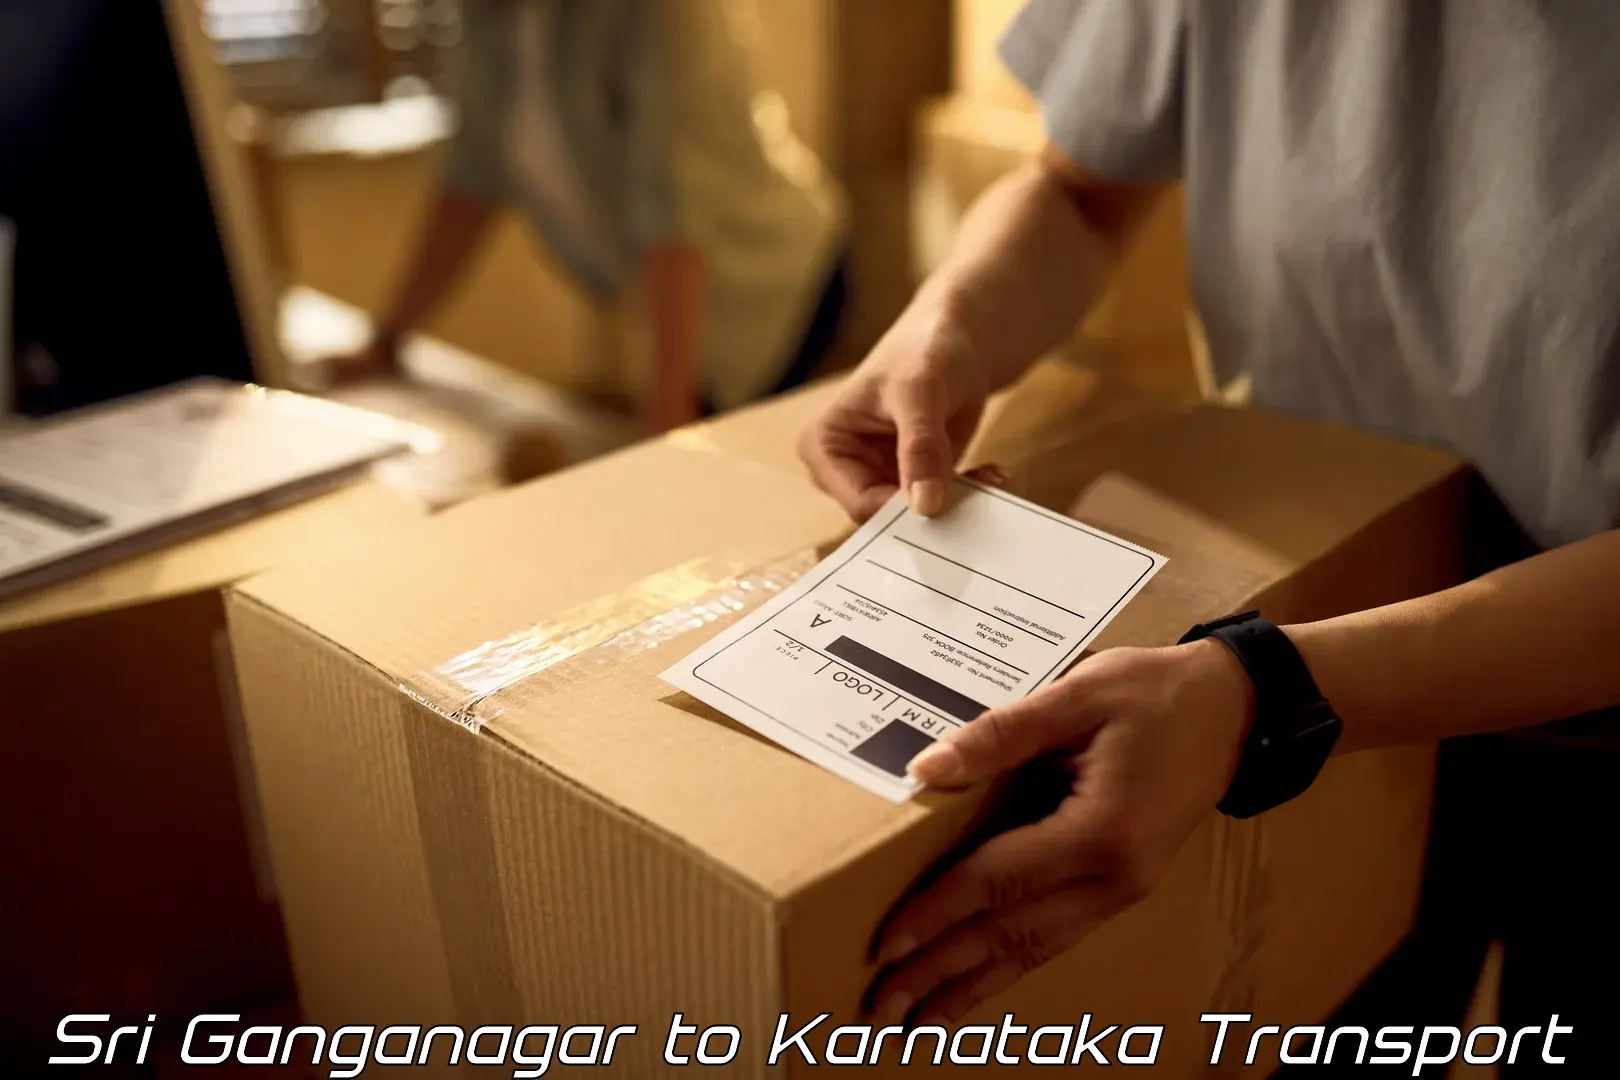 Shipping partner Sri Ganganagar to Channarayapatna